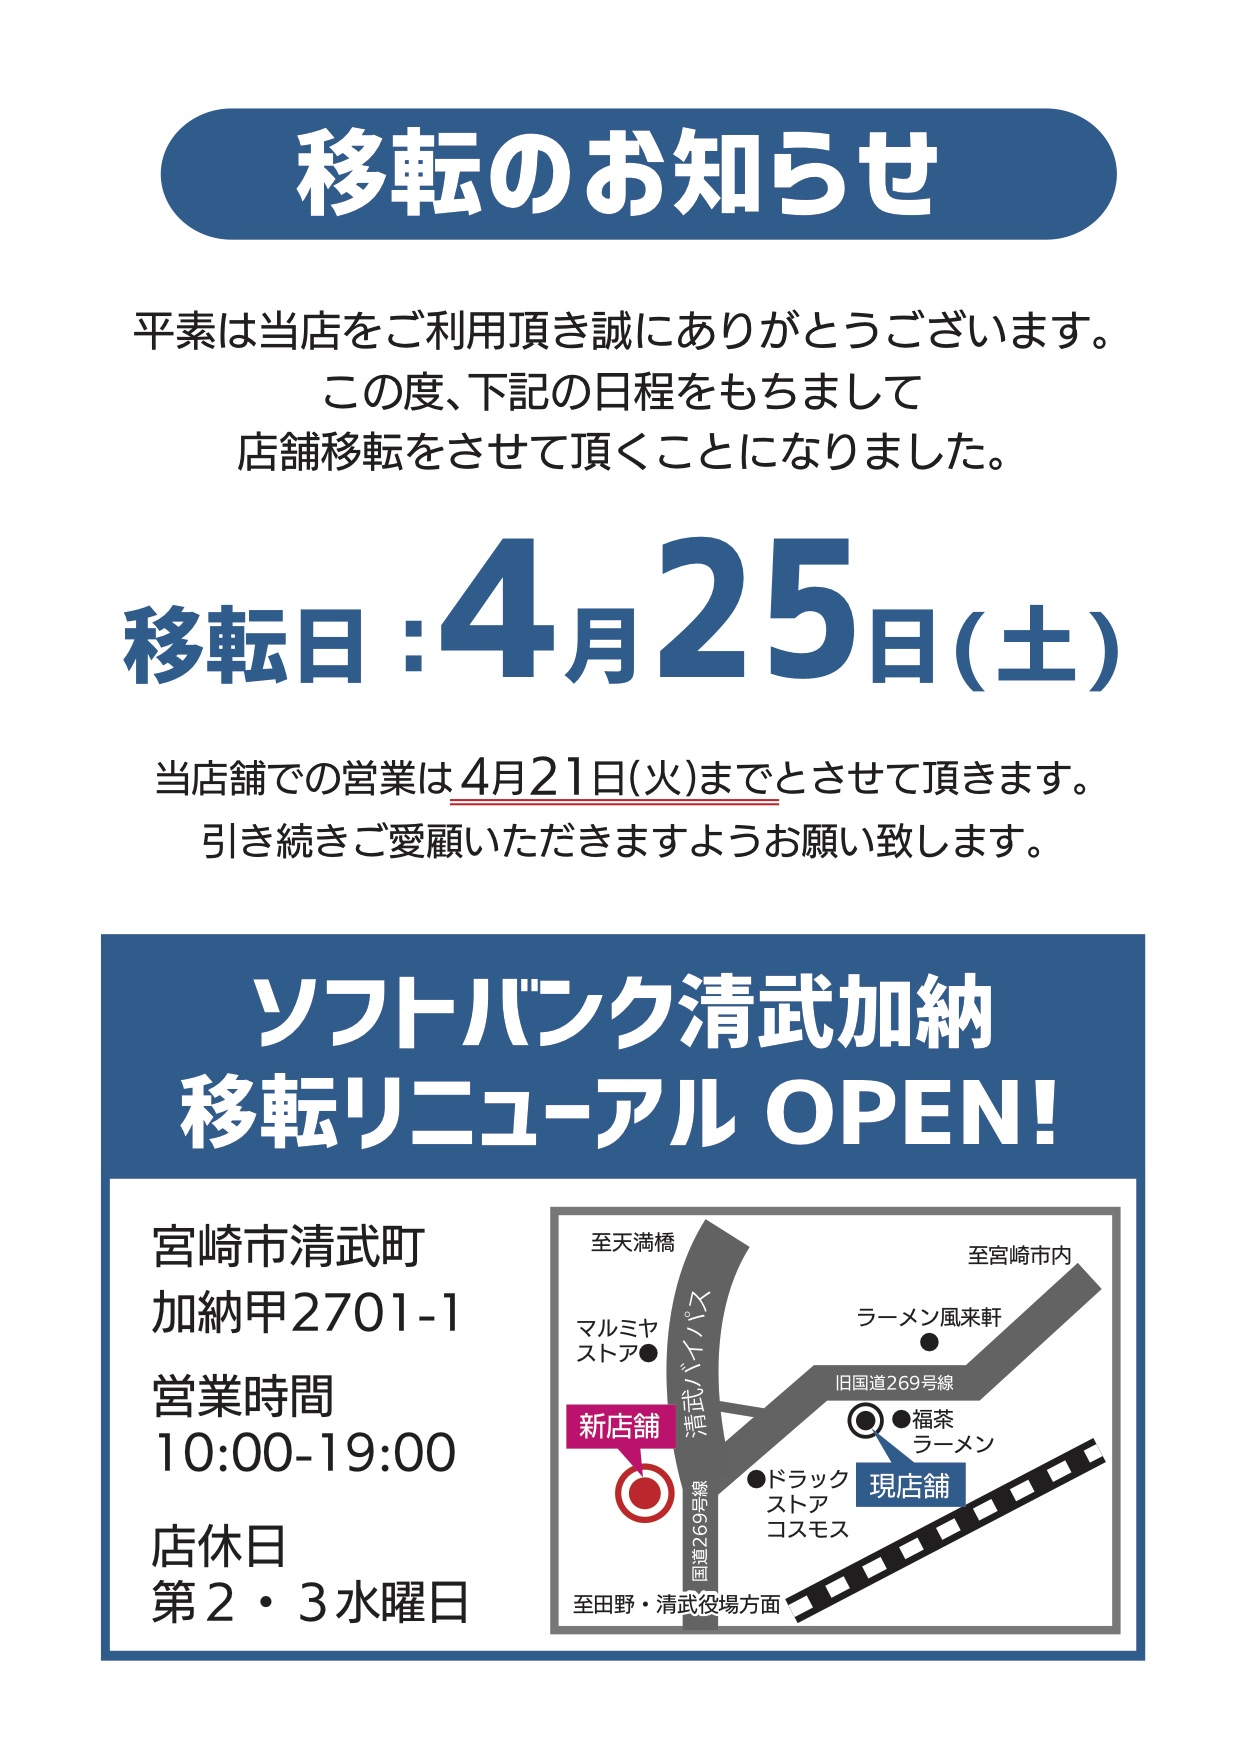 【移転のお知らせ】ソフトバンク清武加納が４月２５日に移転いたしますイメージ